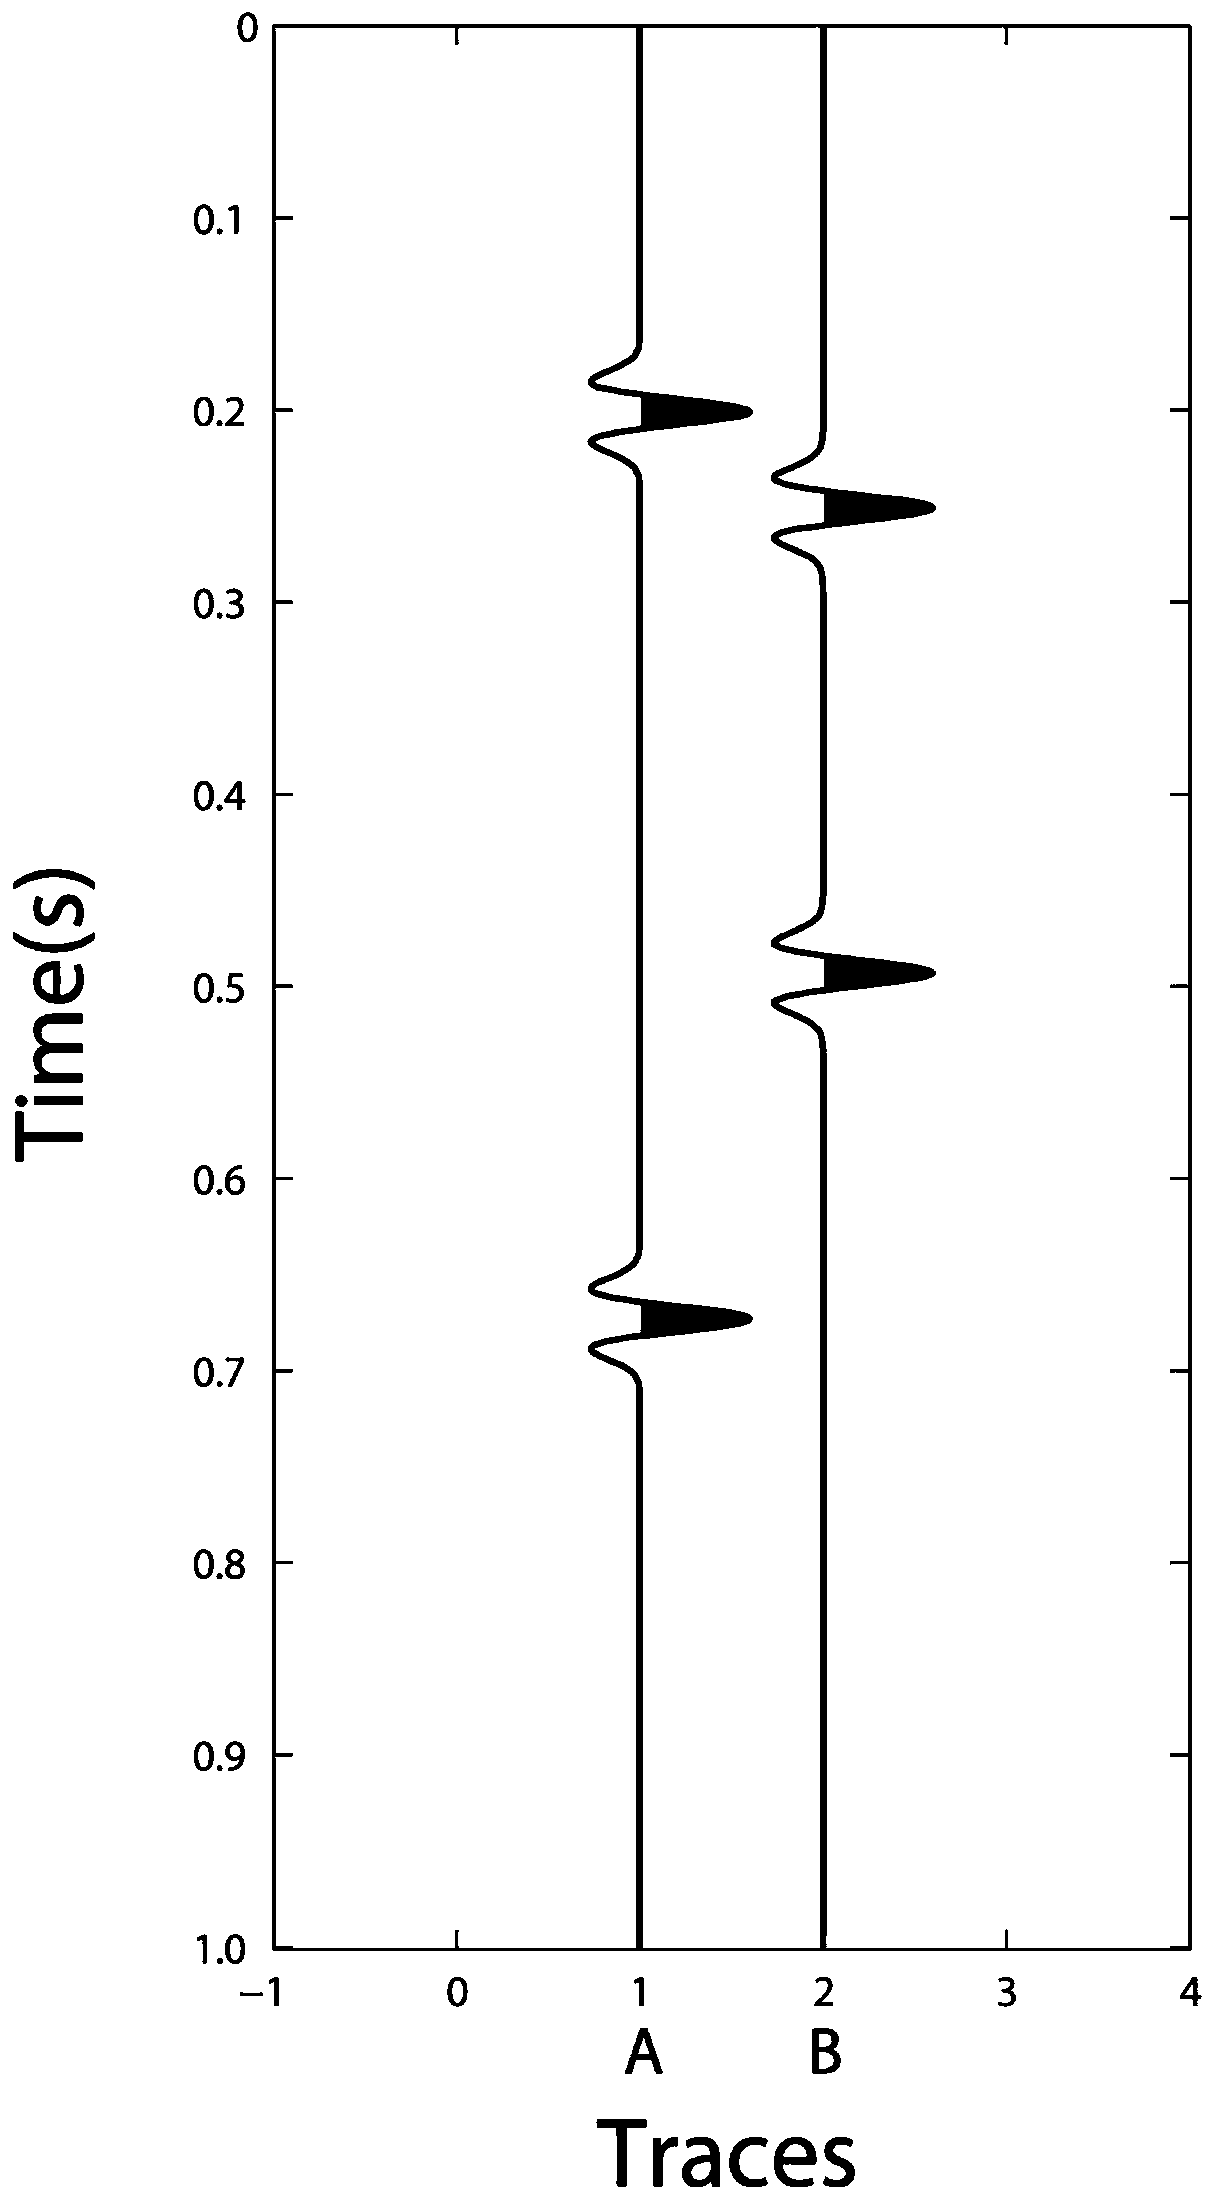 Denoising method for seismic data signal based on variational principle